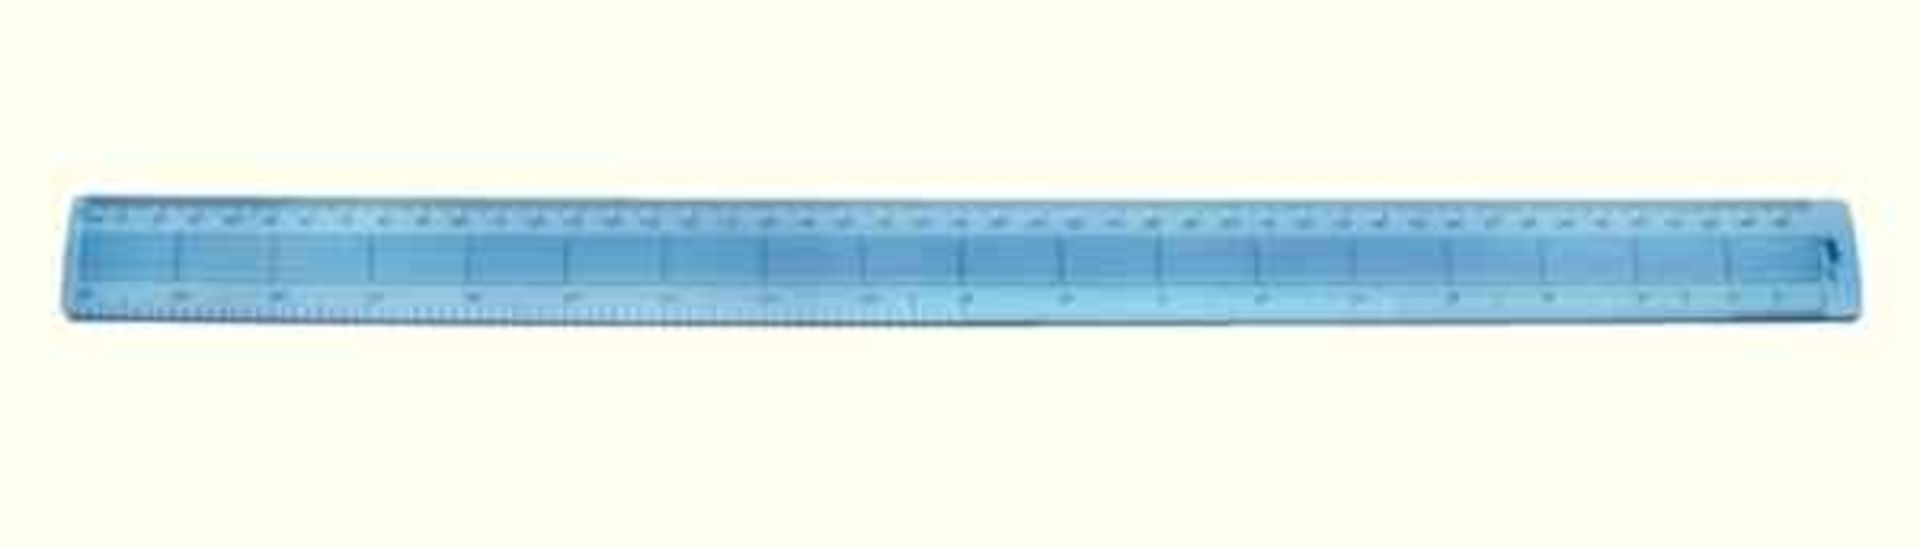 Grade A Ten 18 Inch Helix Shatterproof Rulers